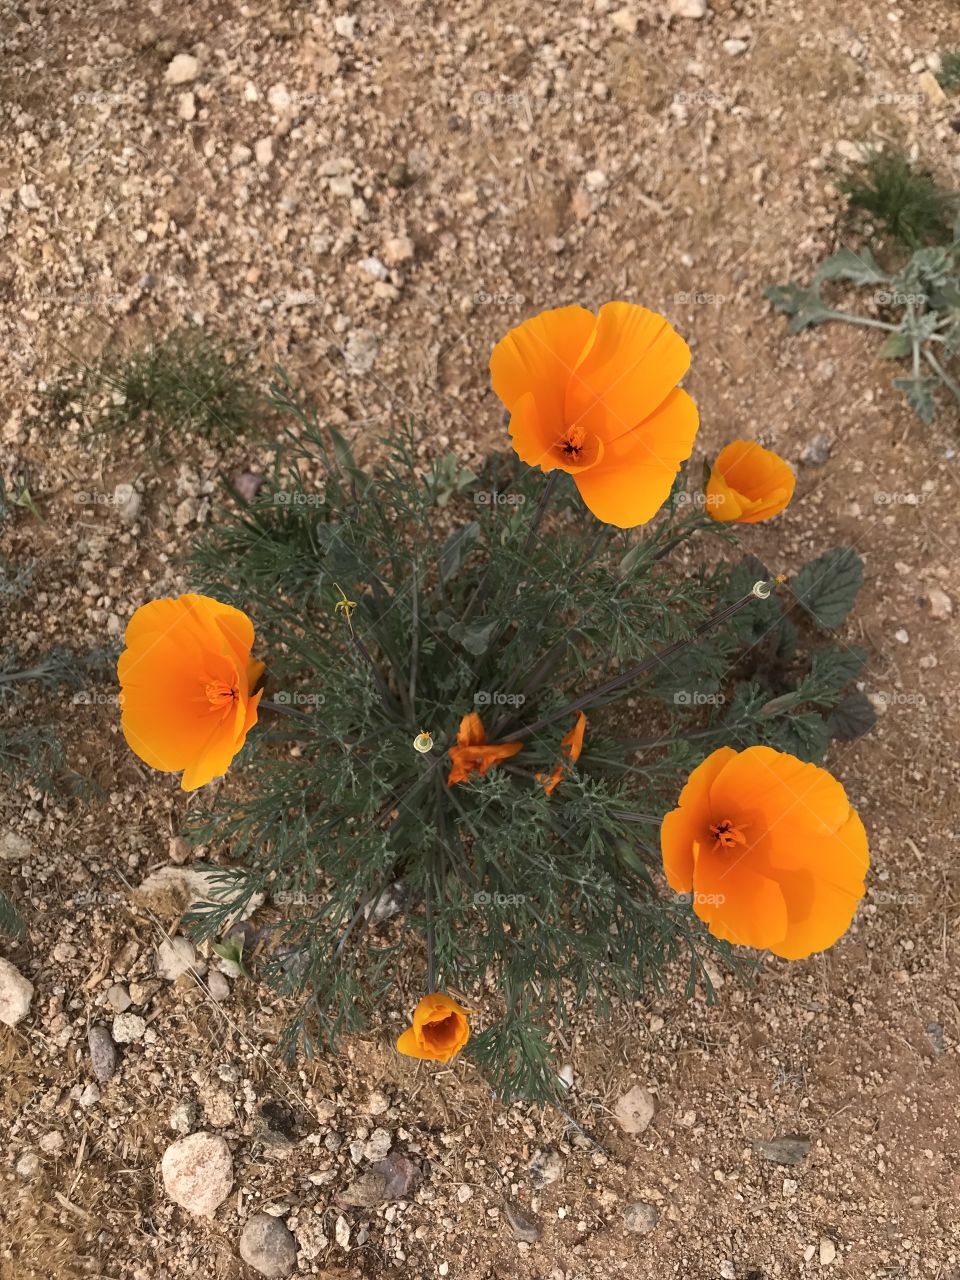 Arizona desert wild flowers